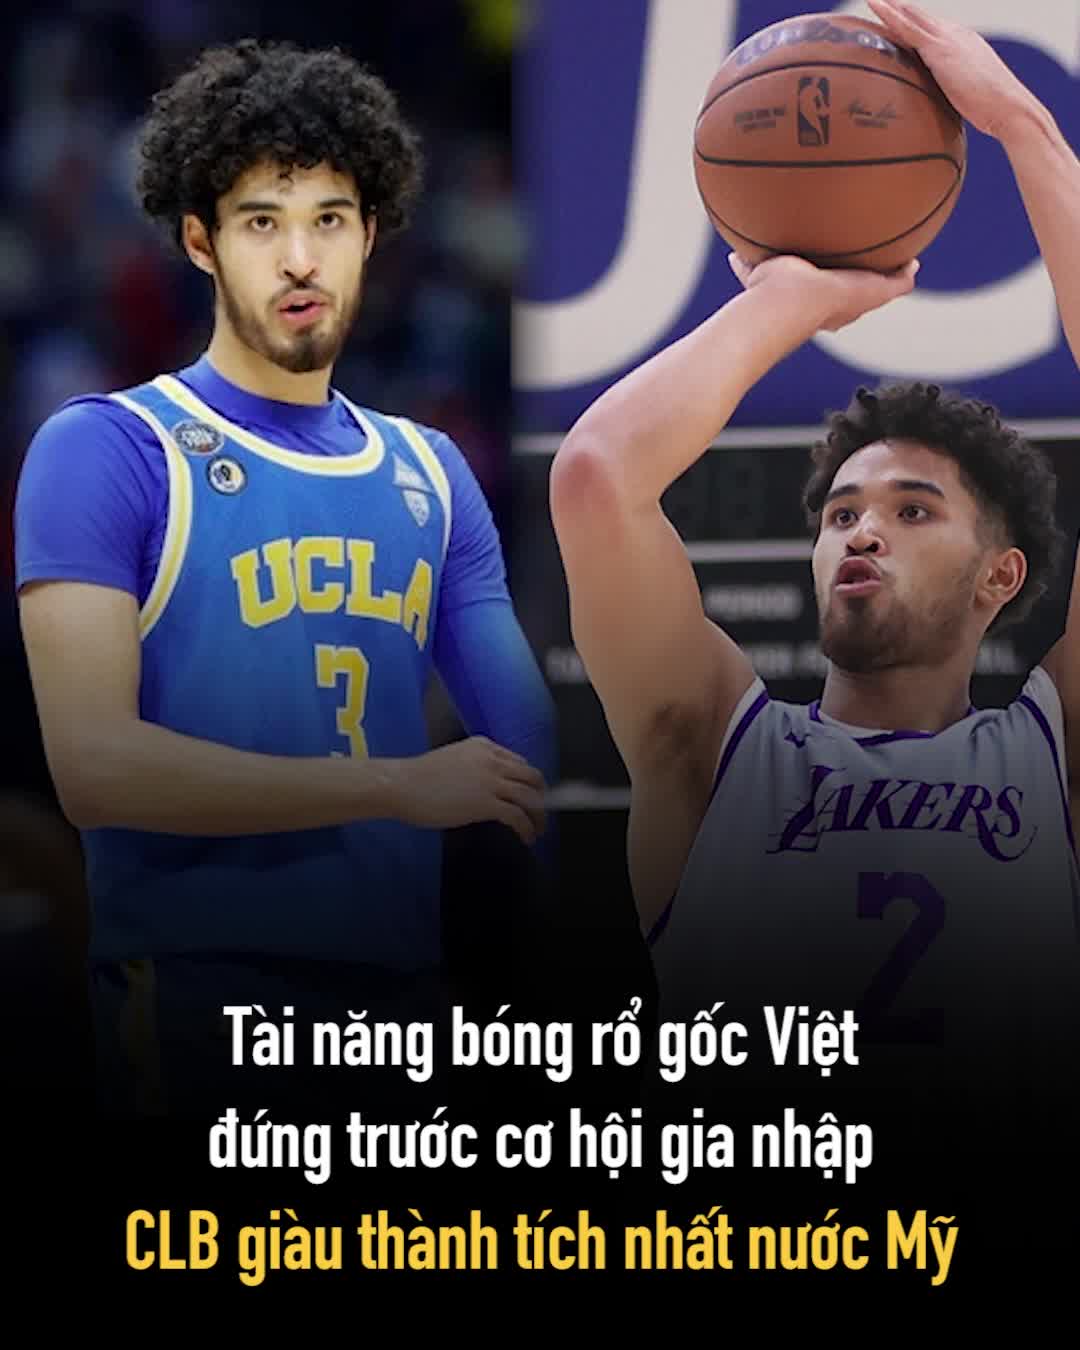 Tài năng bóng rổ gốc Việt đứng trước cơ hội gia nhập CLB giàu thành tích nhất nước Mỹ